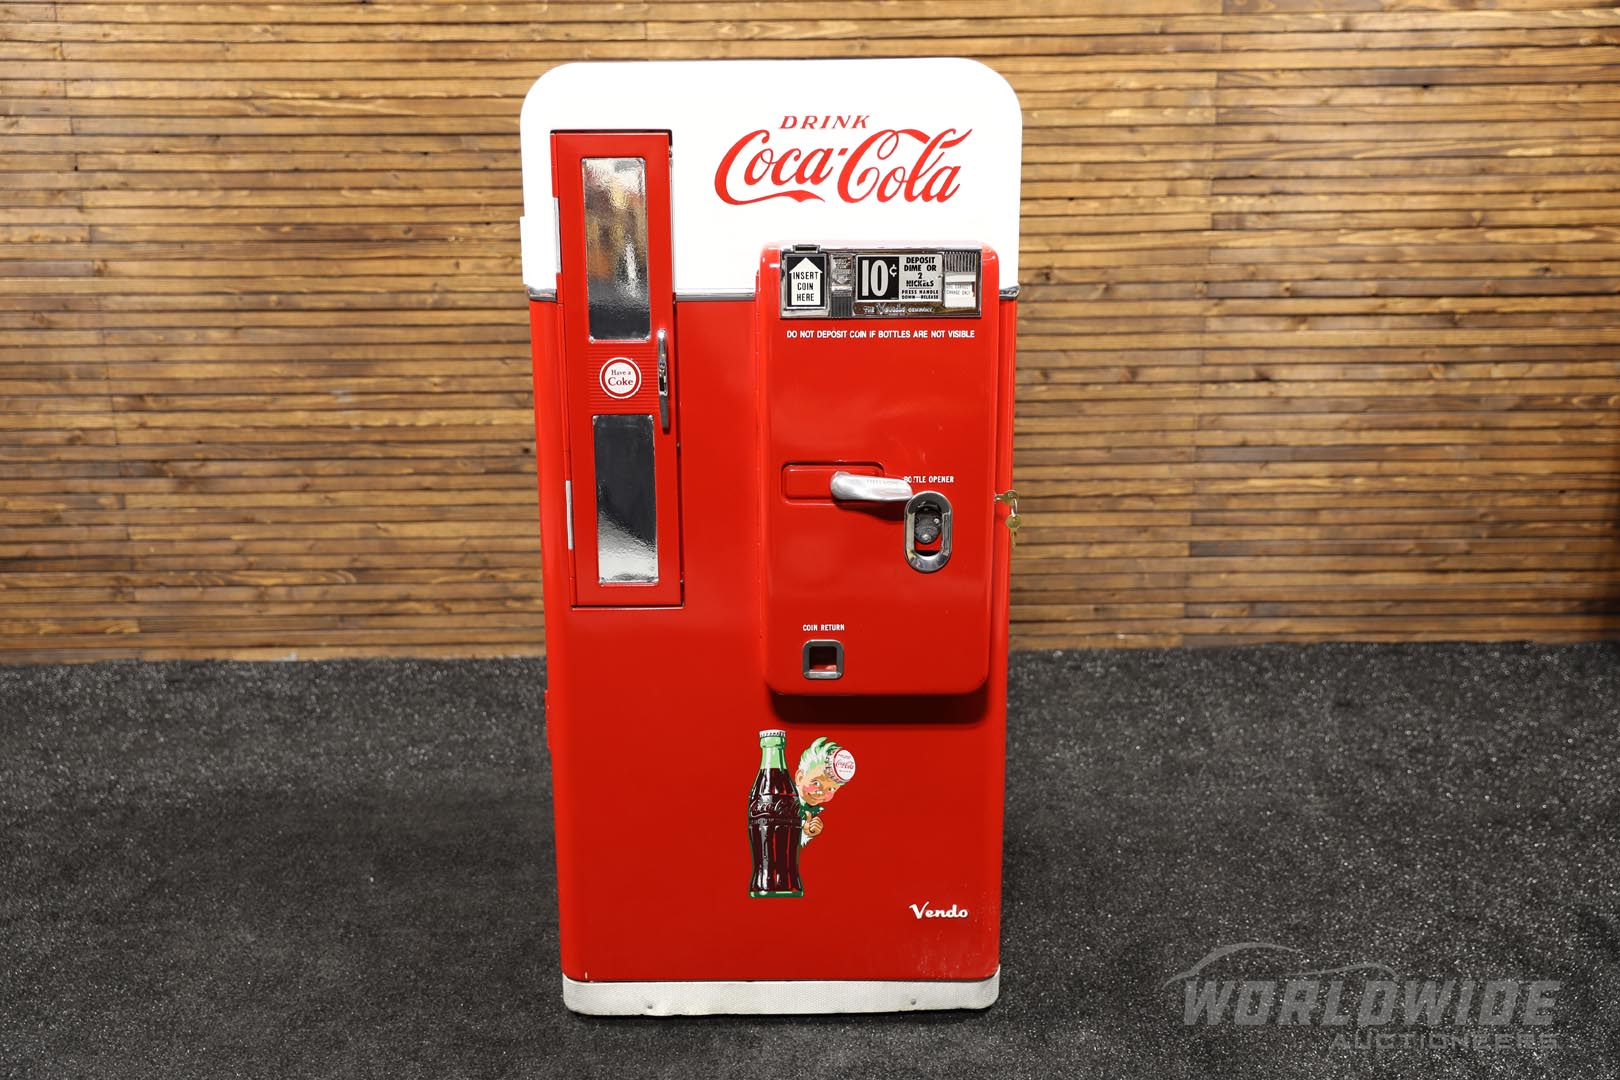 Vendo 56 Coca-Cola Machine - Restored 